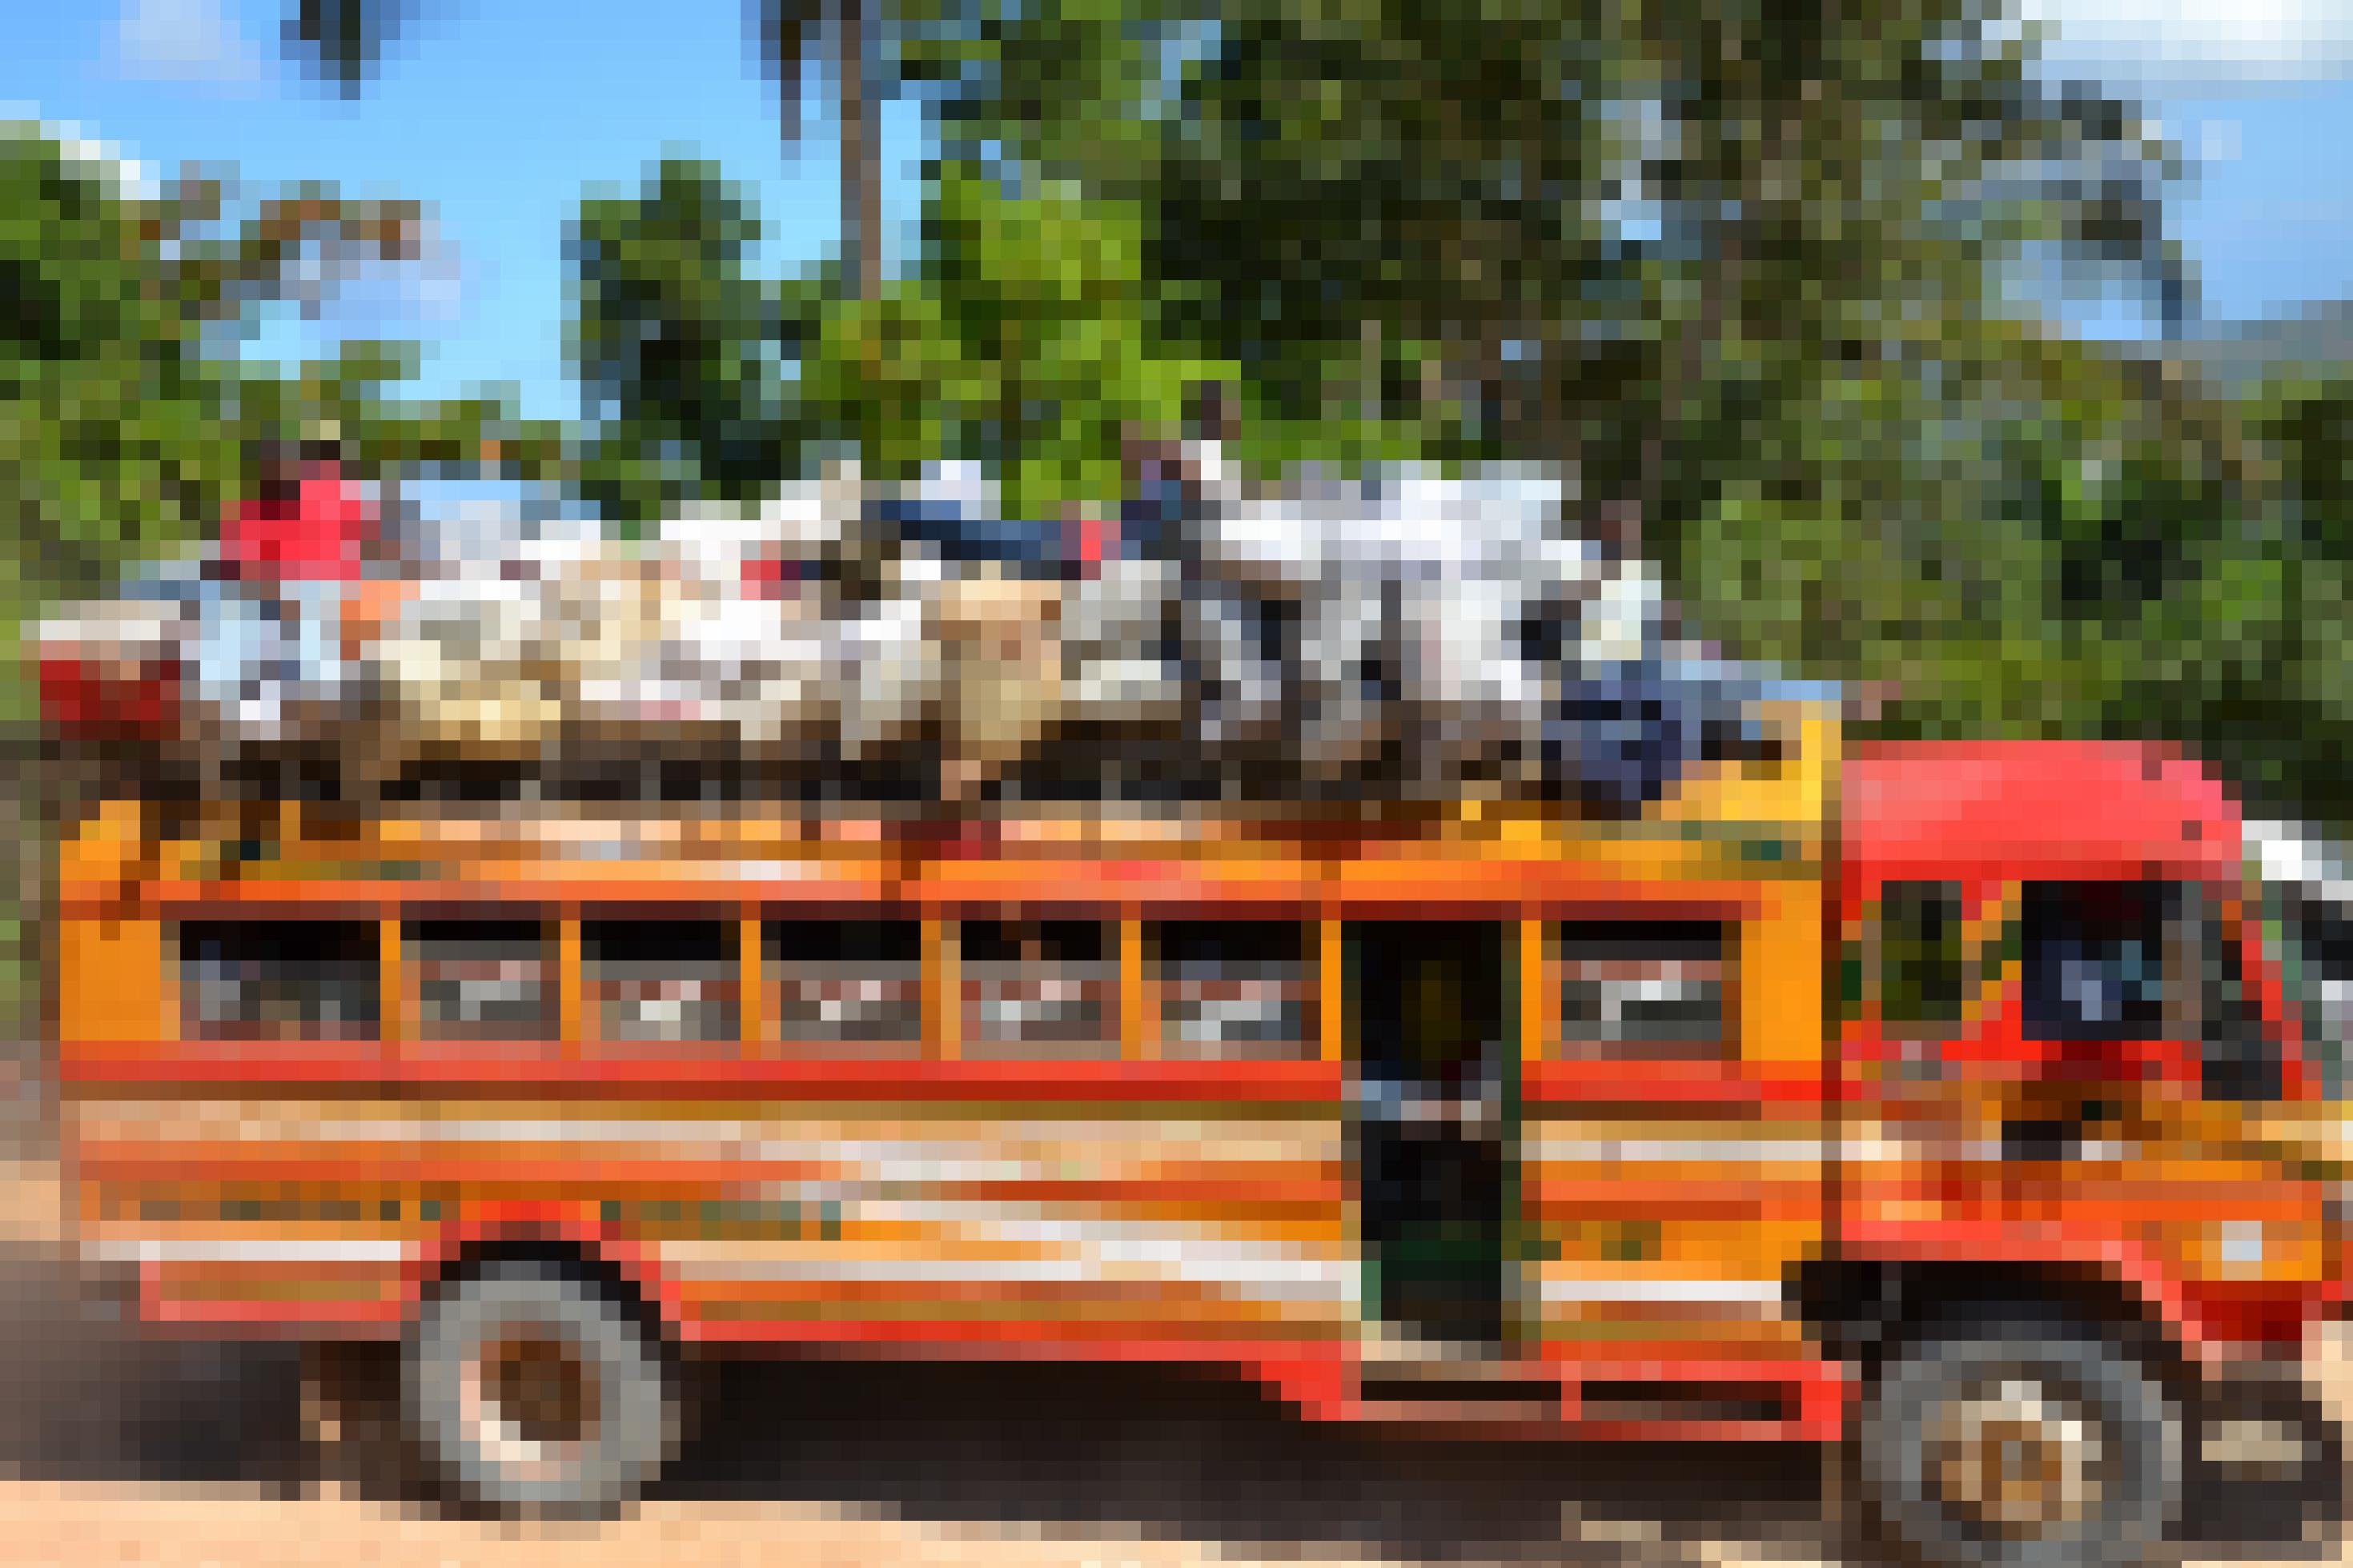 Ein rotgelb bemalter alter Schulbus, vollbesetzt und auf dem Dach beladen mit Säcken fährt durch die grünen Berge im Hinterland von Haiti.